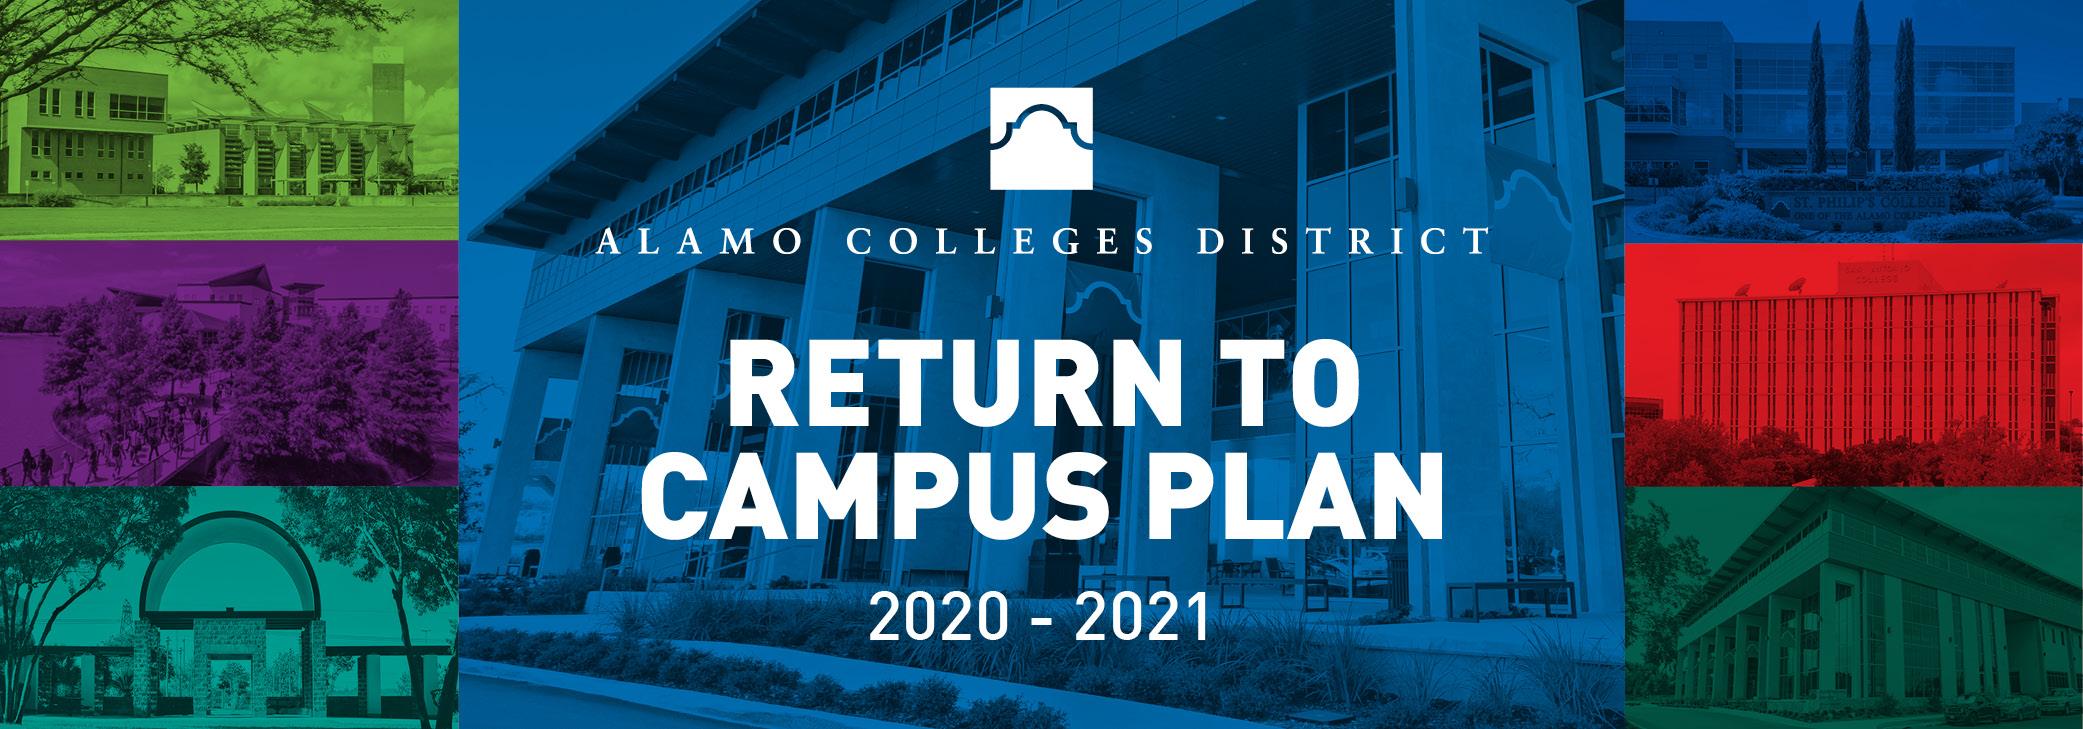 Return to Campus Plan Alamo Colleges